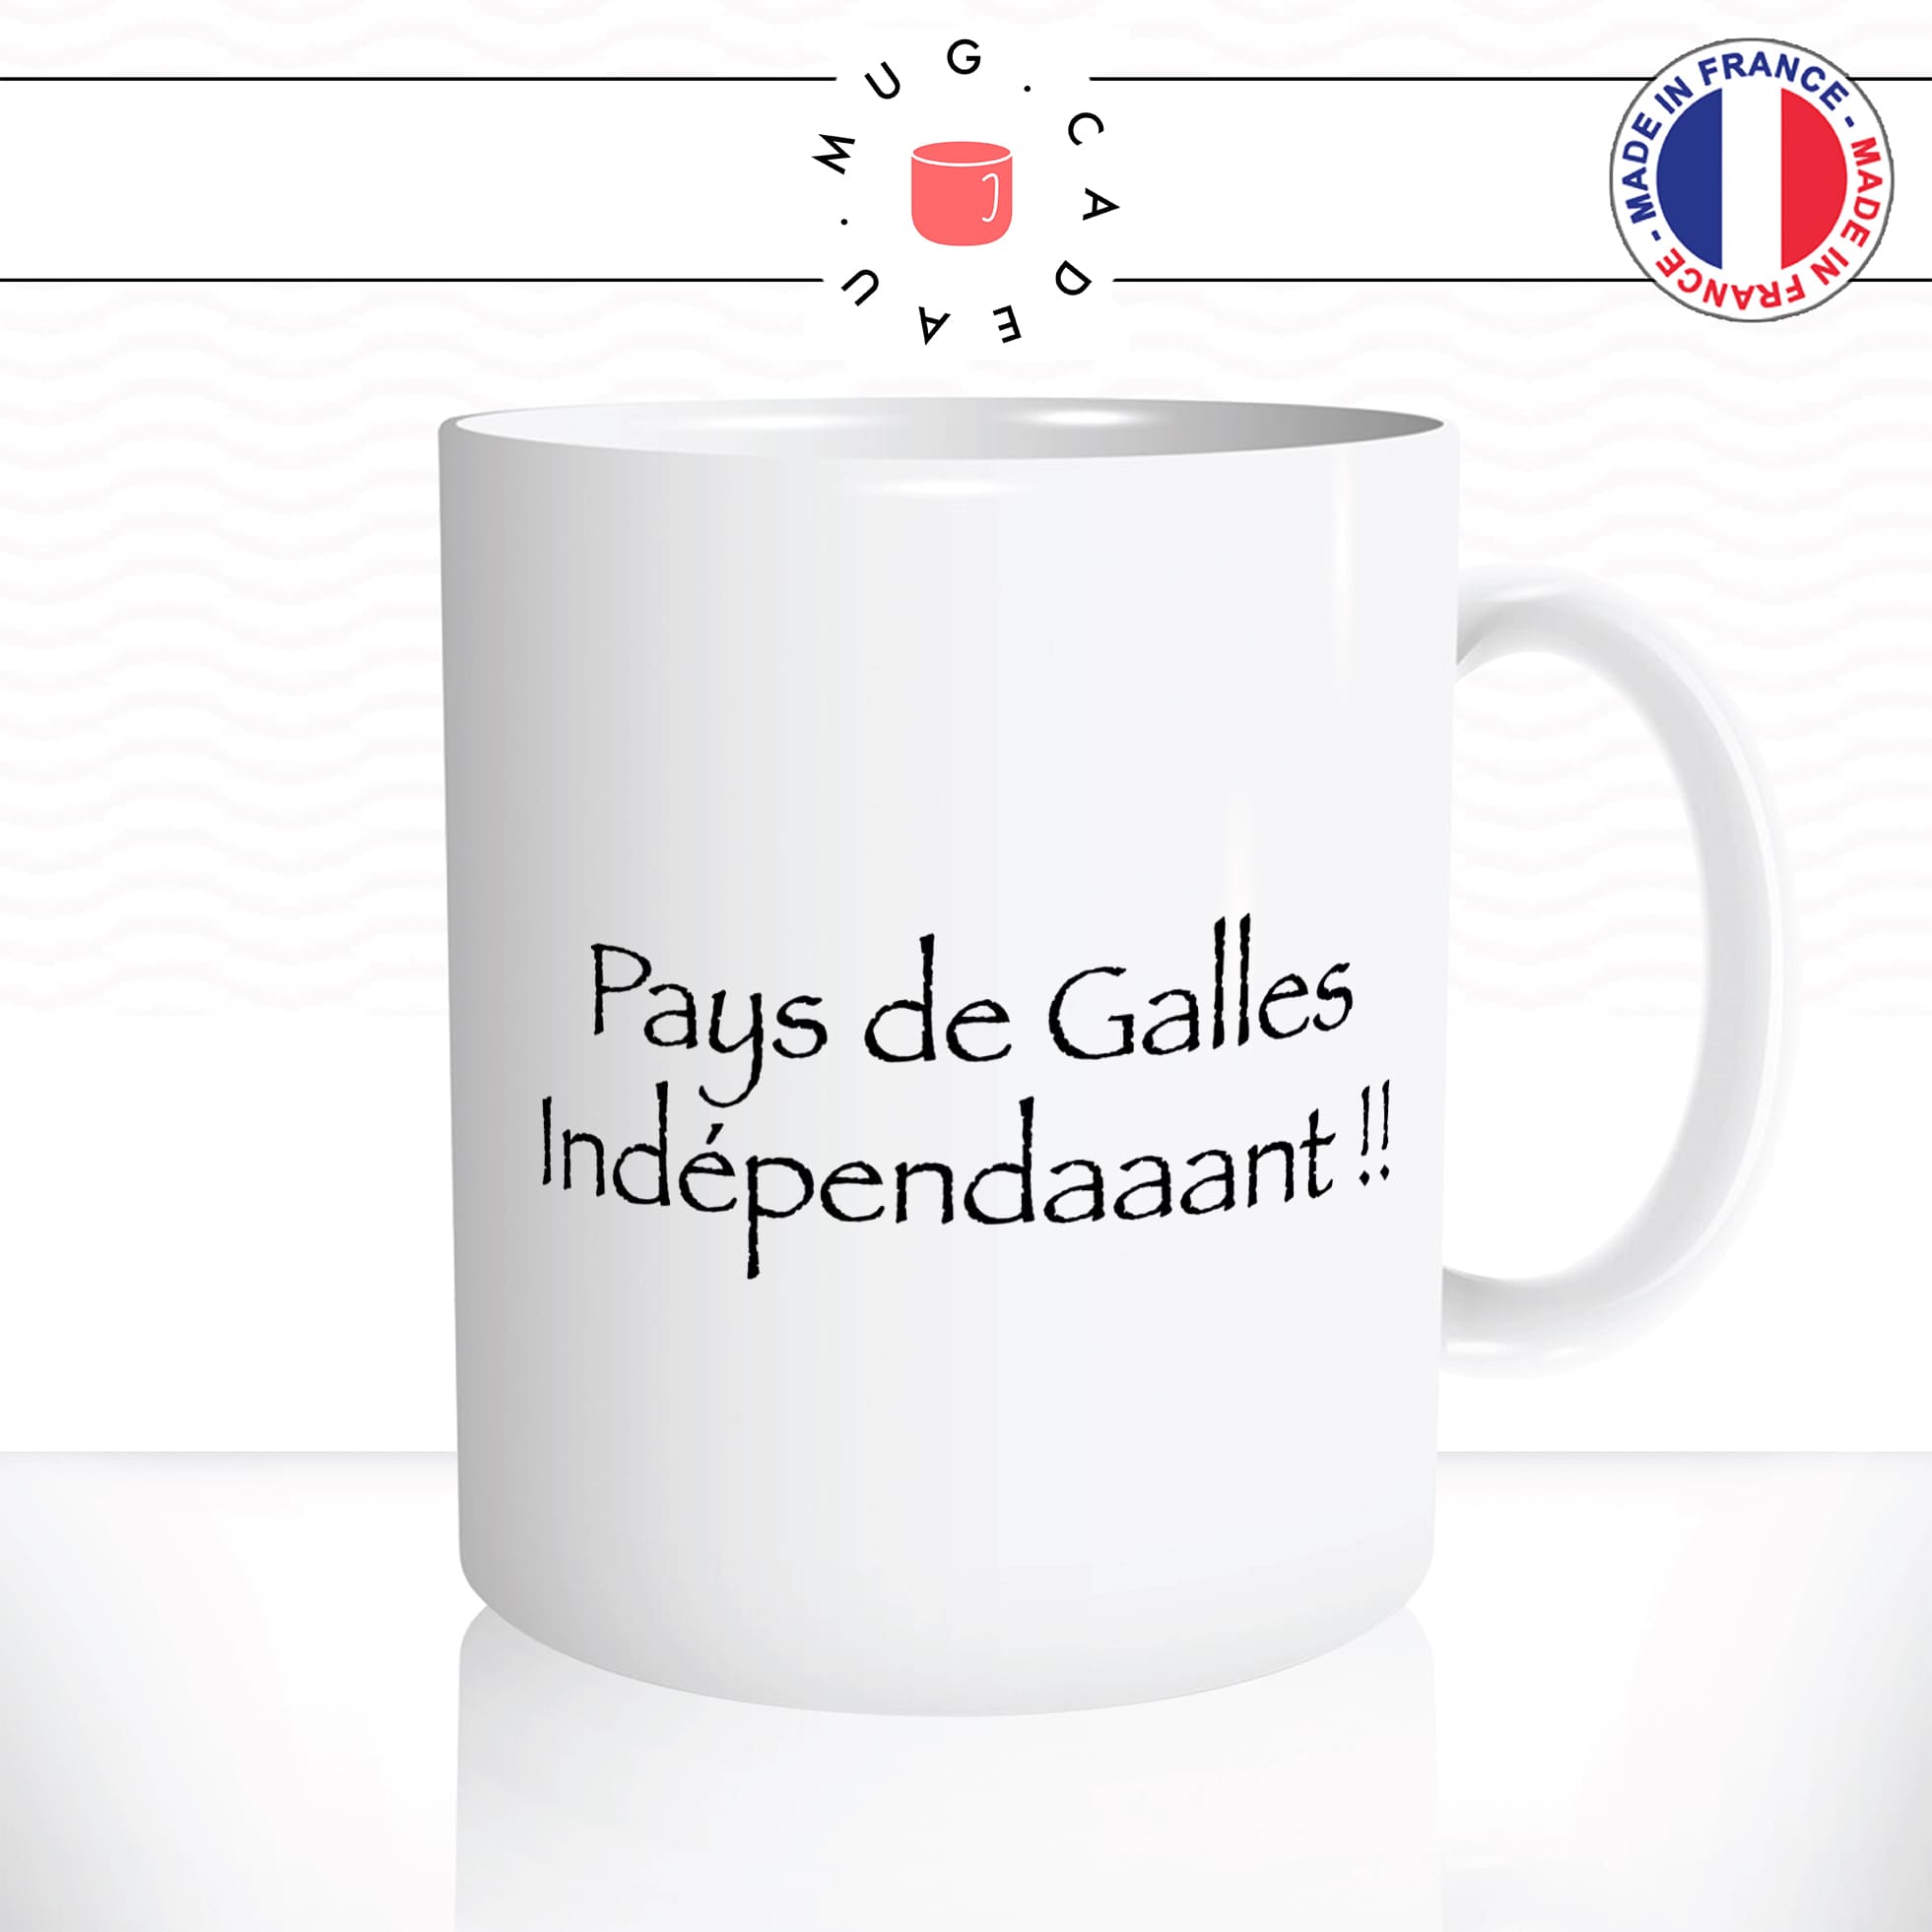 mug-tasse-kaamelott-pays-de-galles-independant-citation-série-francaise-culte-humour-drole-fun-idée-cadeau-original-café-thé-personnalisée2